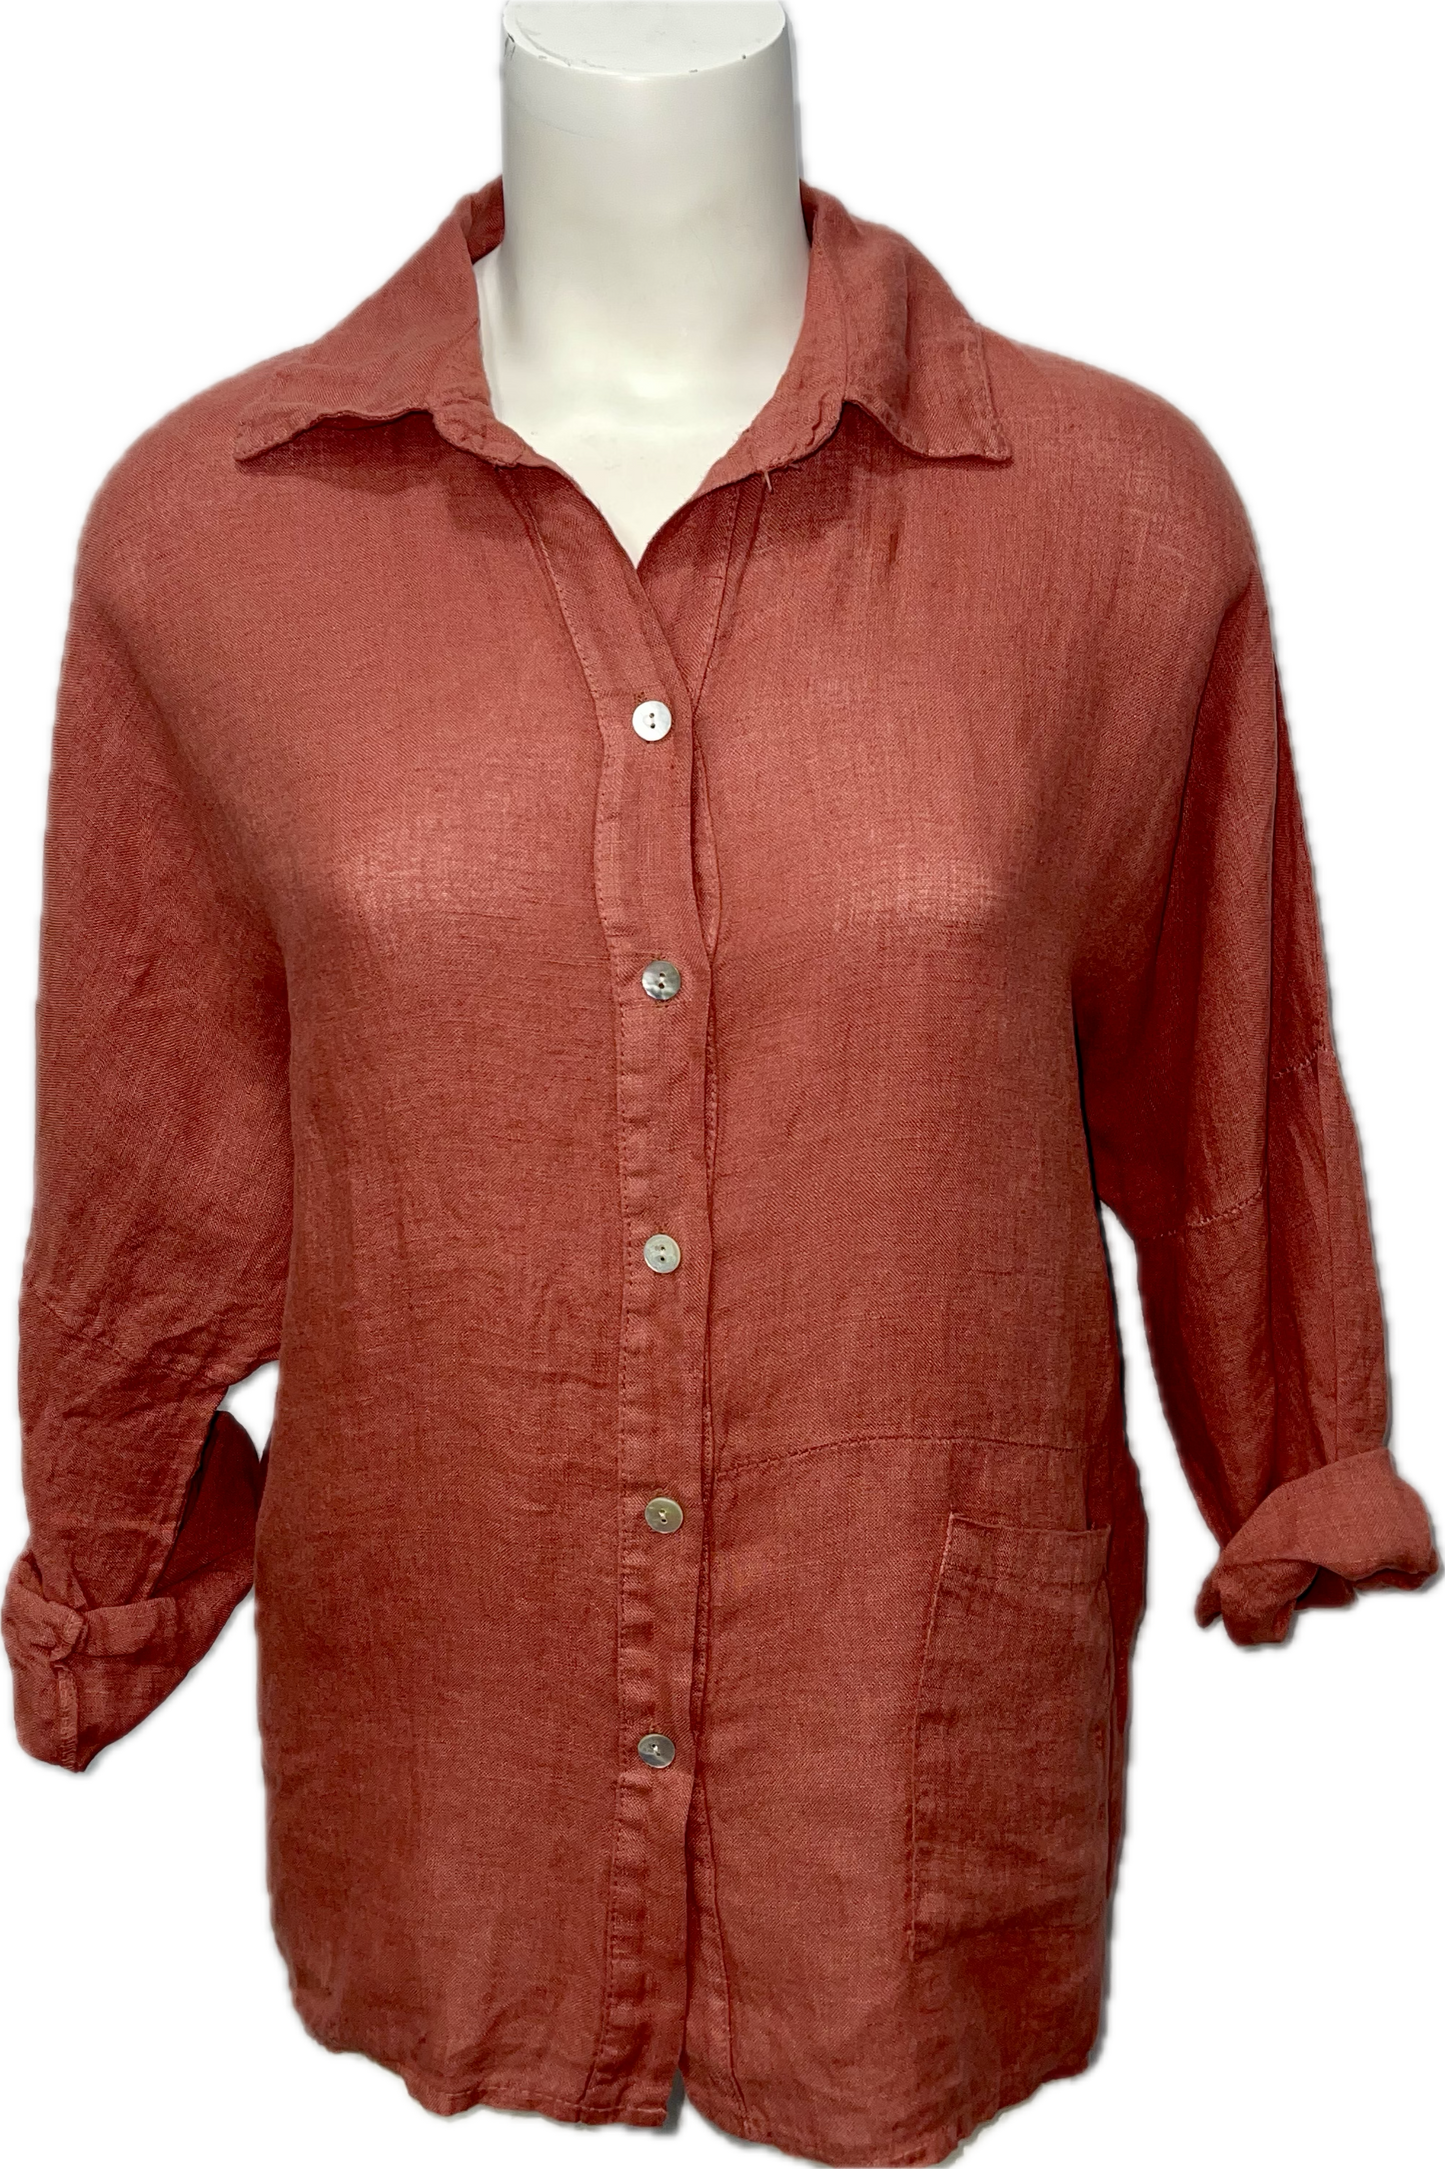 Linen Button-Up Shirt